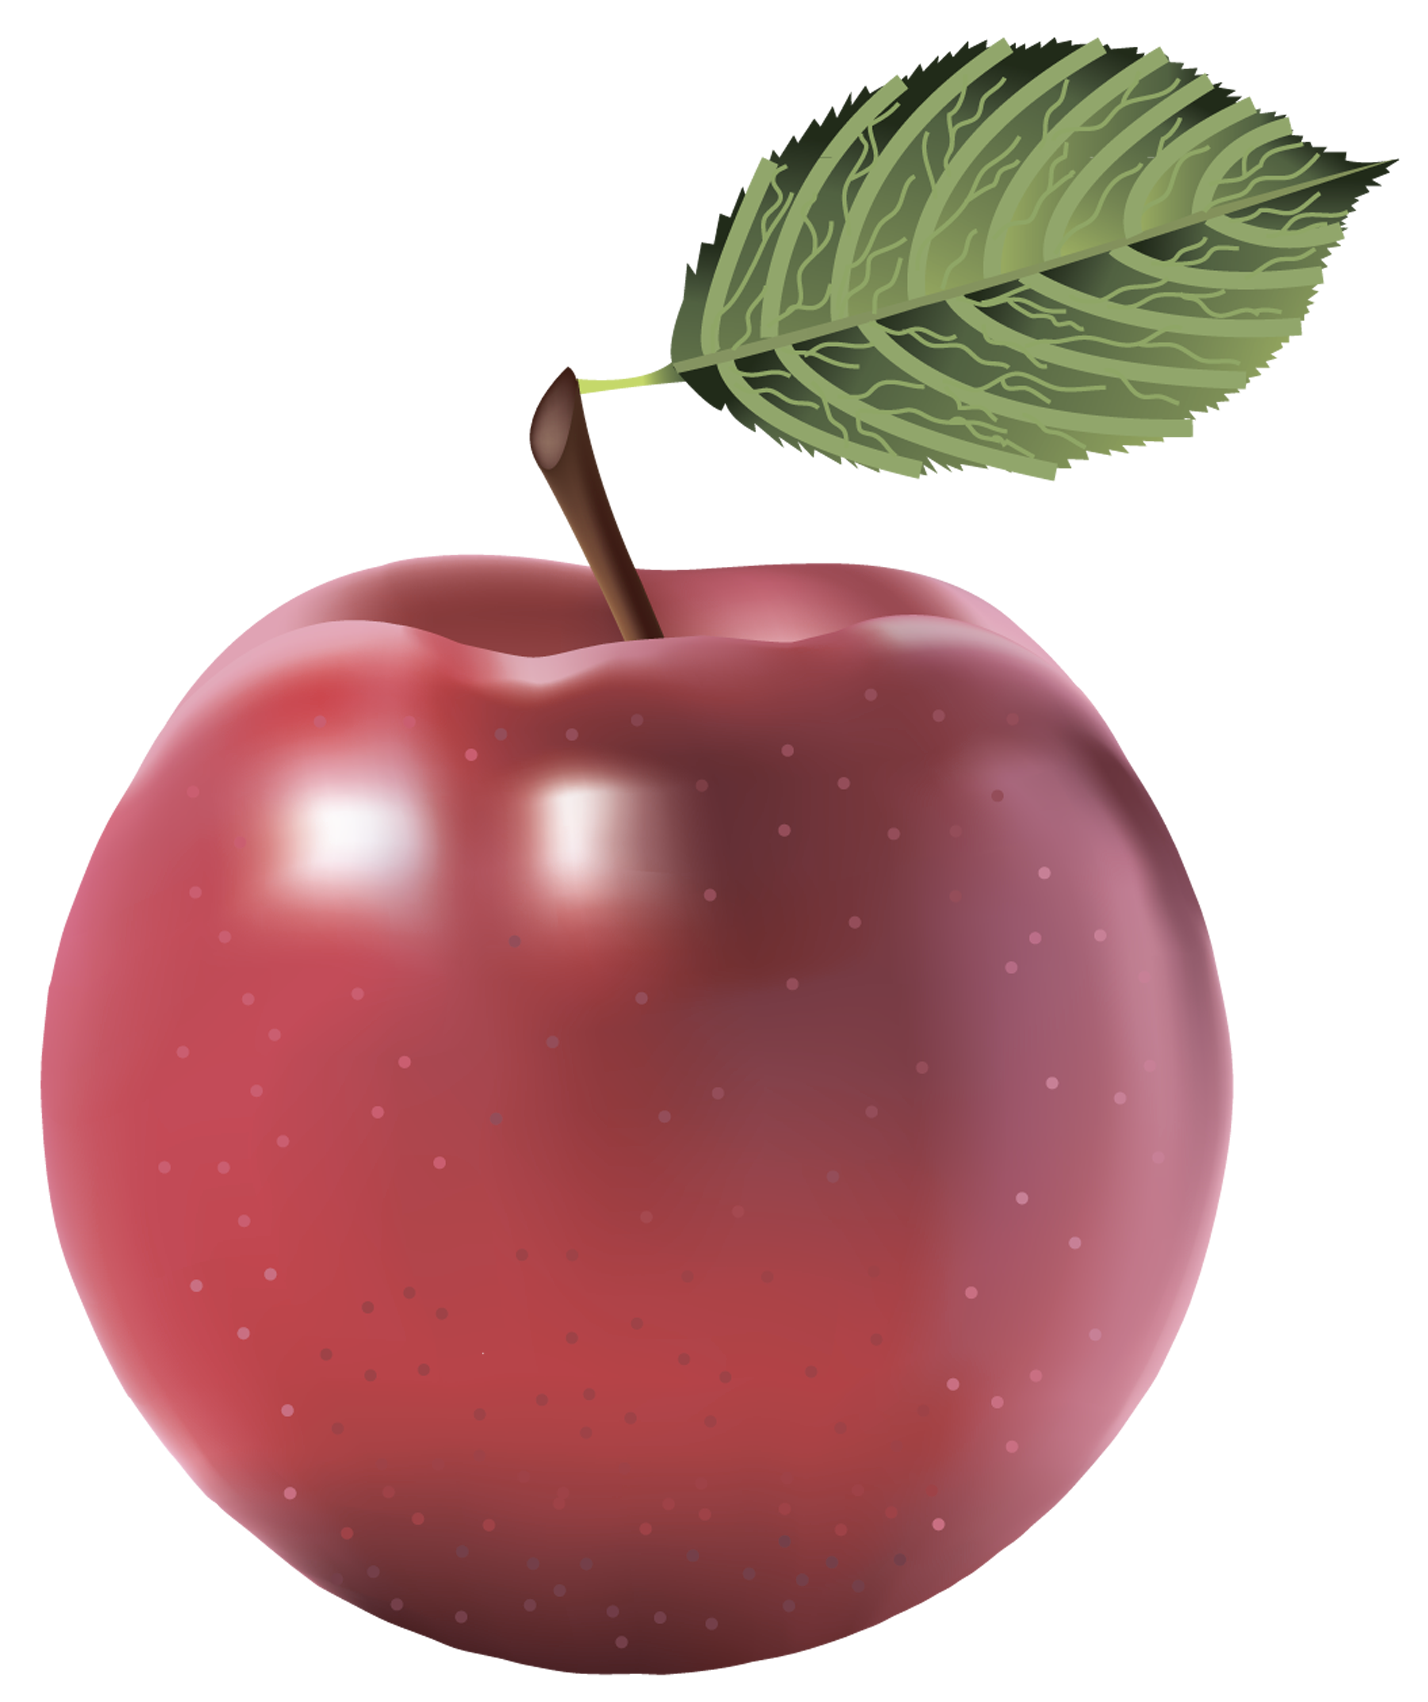 Deliziosa mela rossa